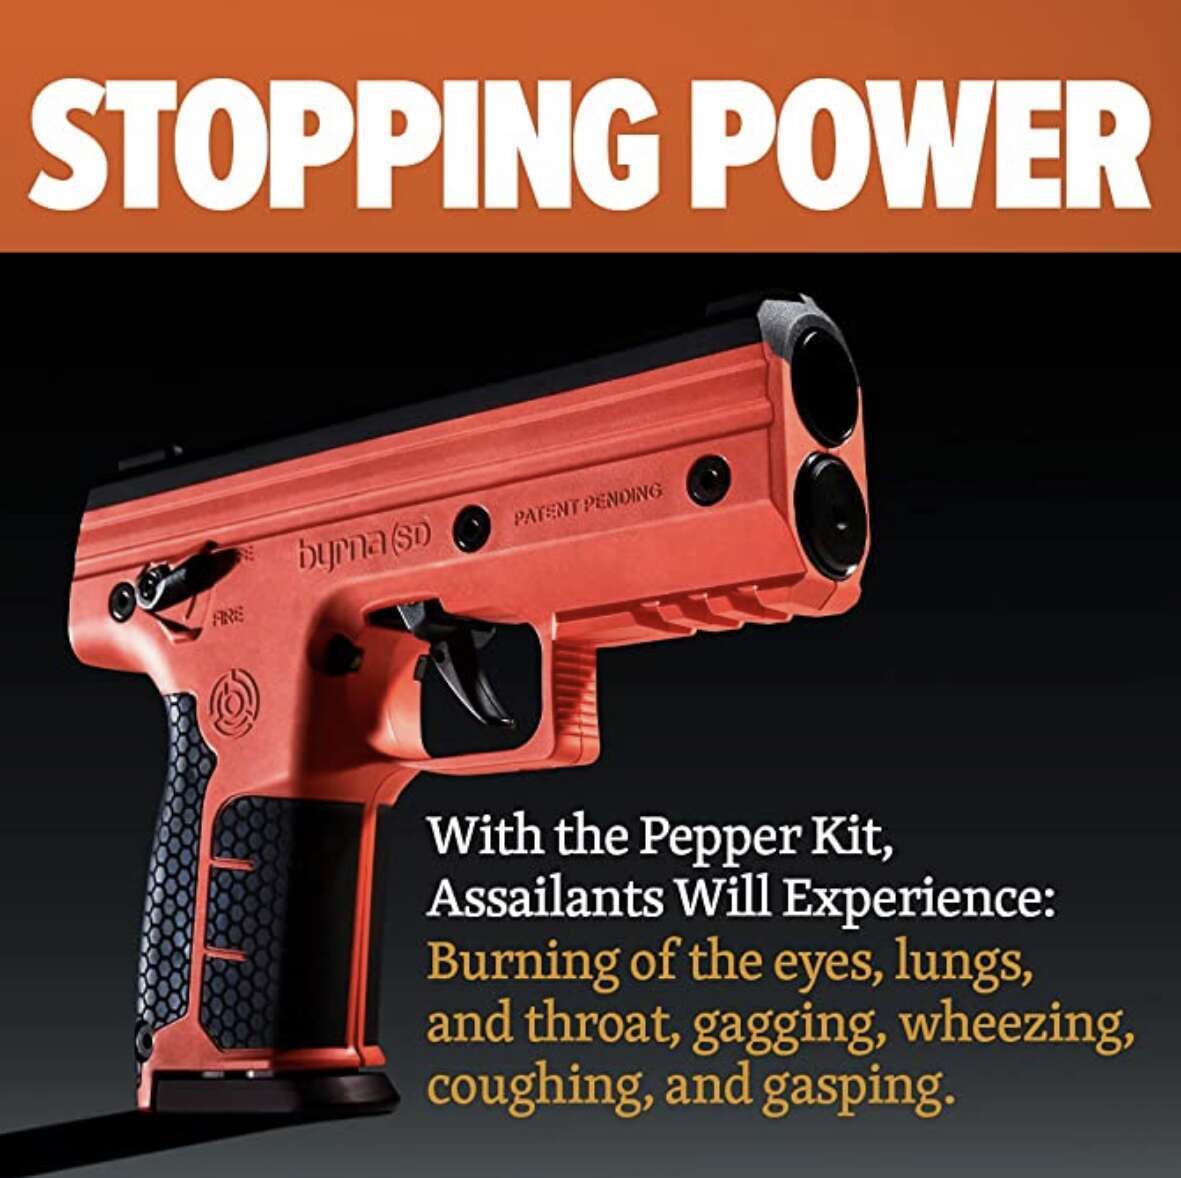 Byrna SD pepper kit stop power